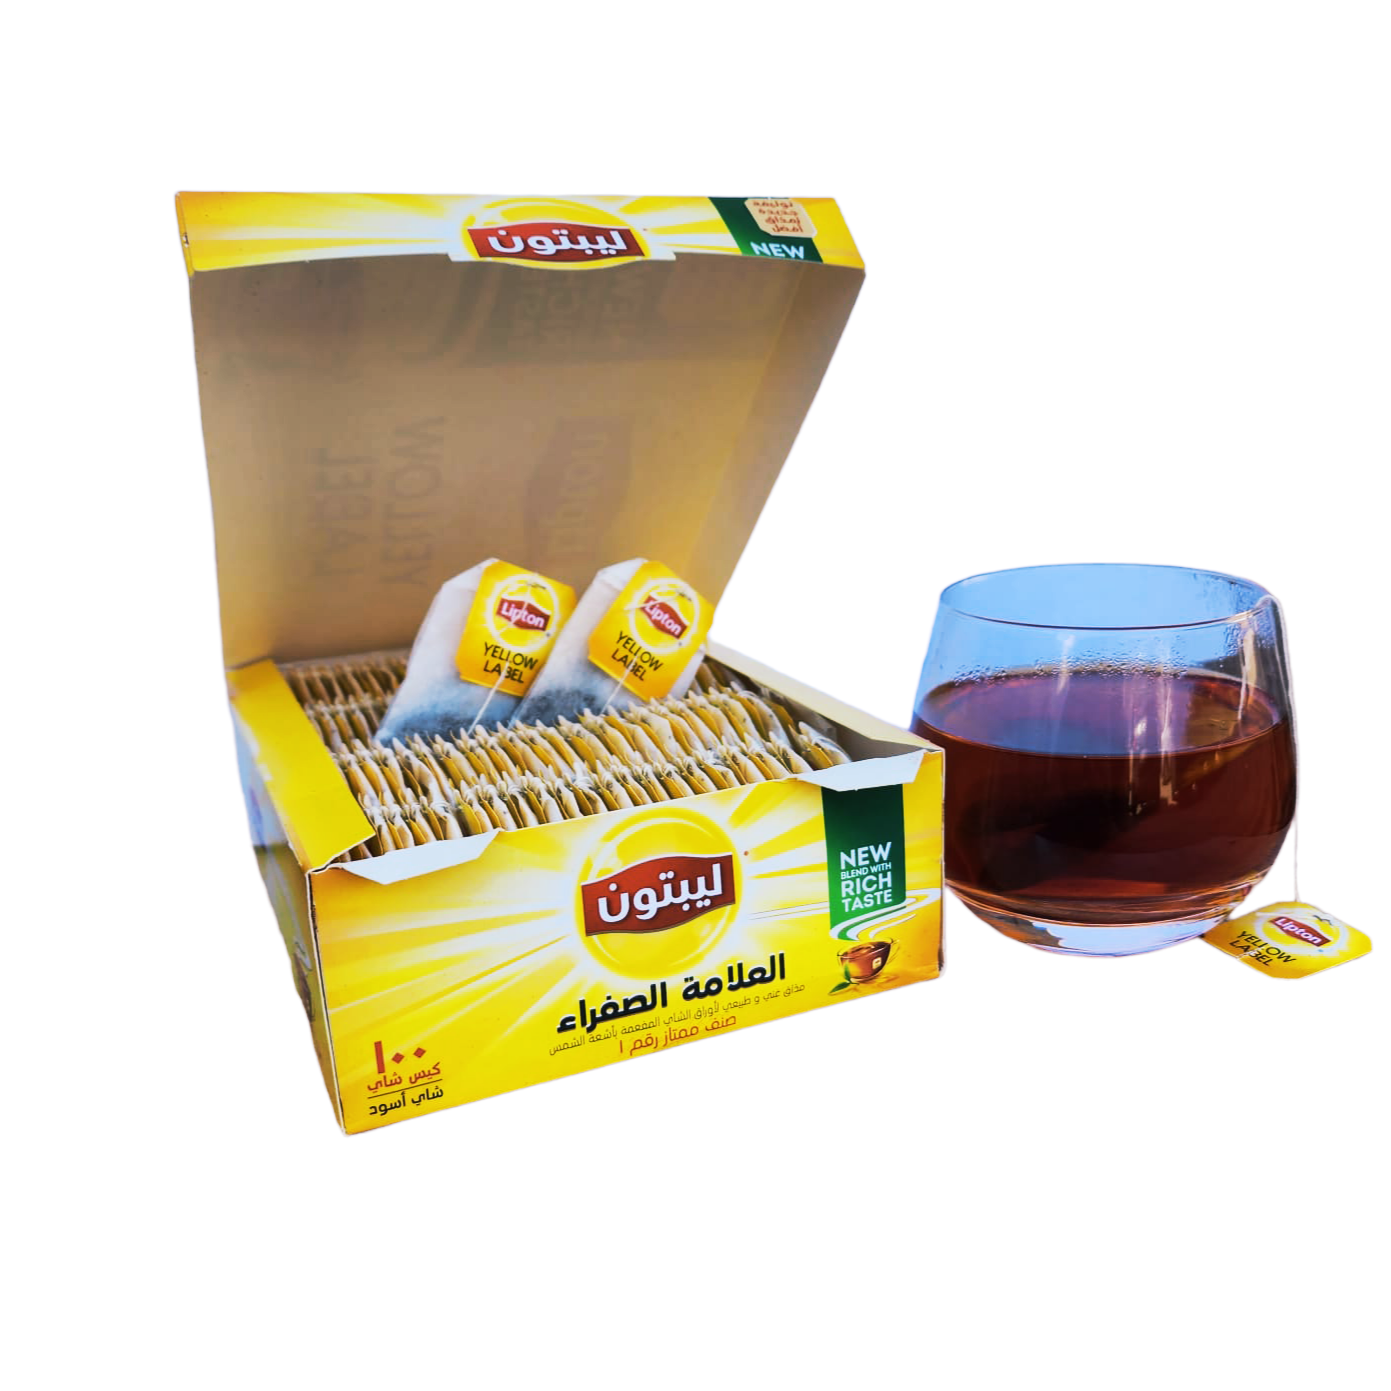 Чай черный Lipton Yellow label в пакетиках